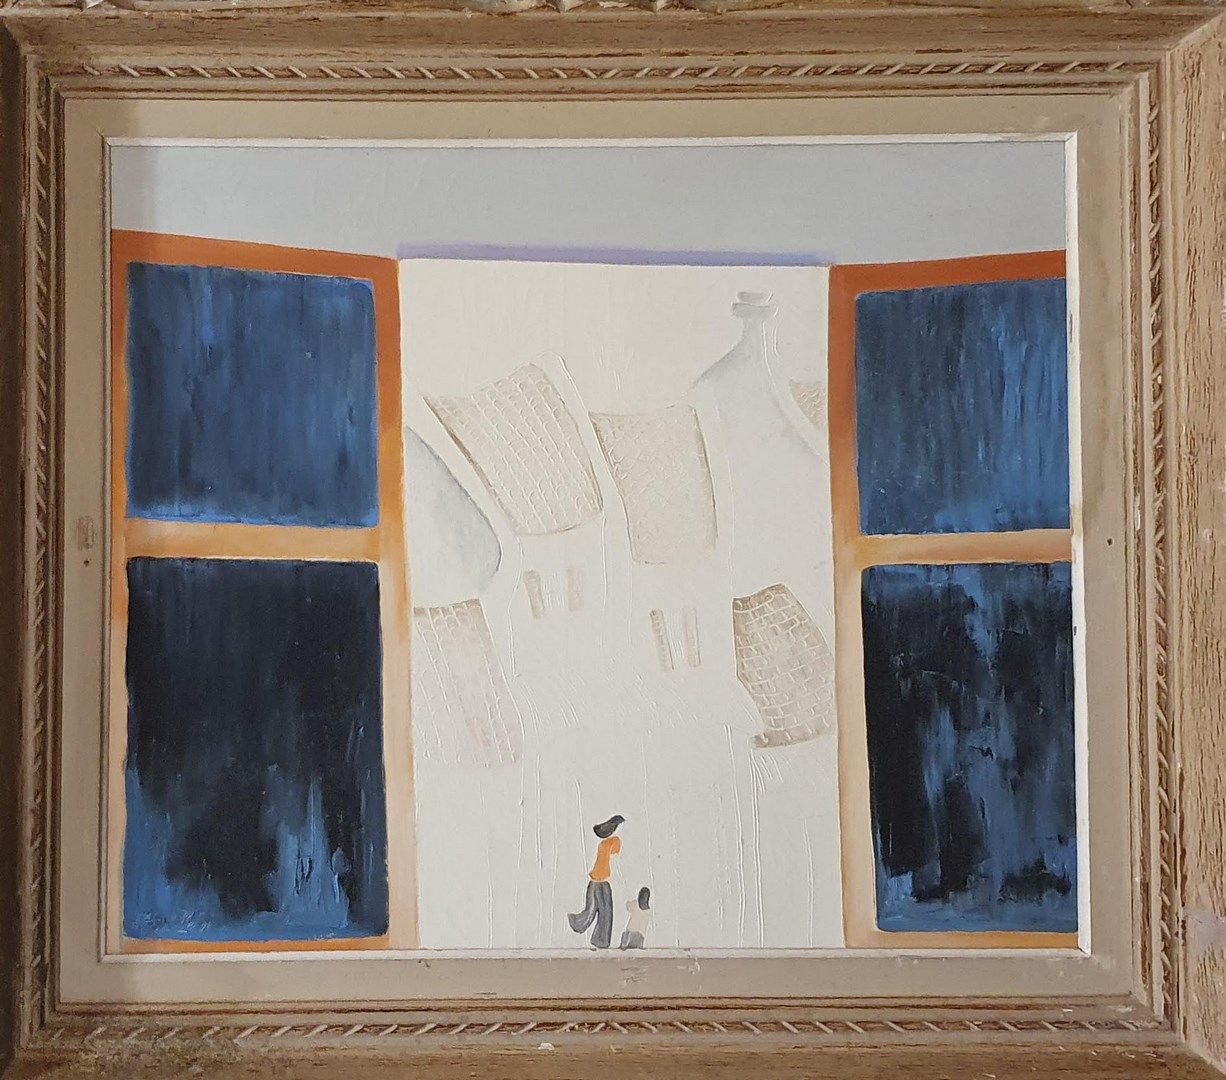 Null 阮振泰 (1941年出生)

透过窗户，90

布面油画，左下角有签名和日期

裂缝、污损的痕迹

54 x 65厘米